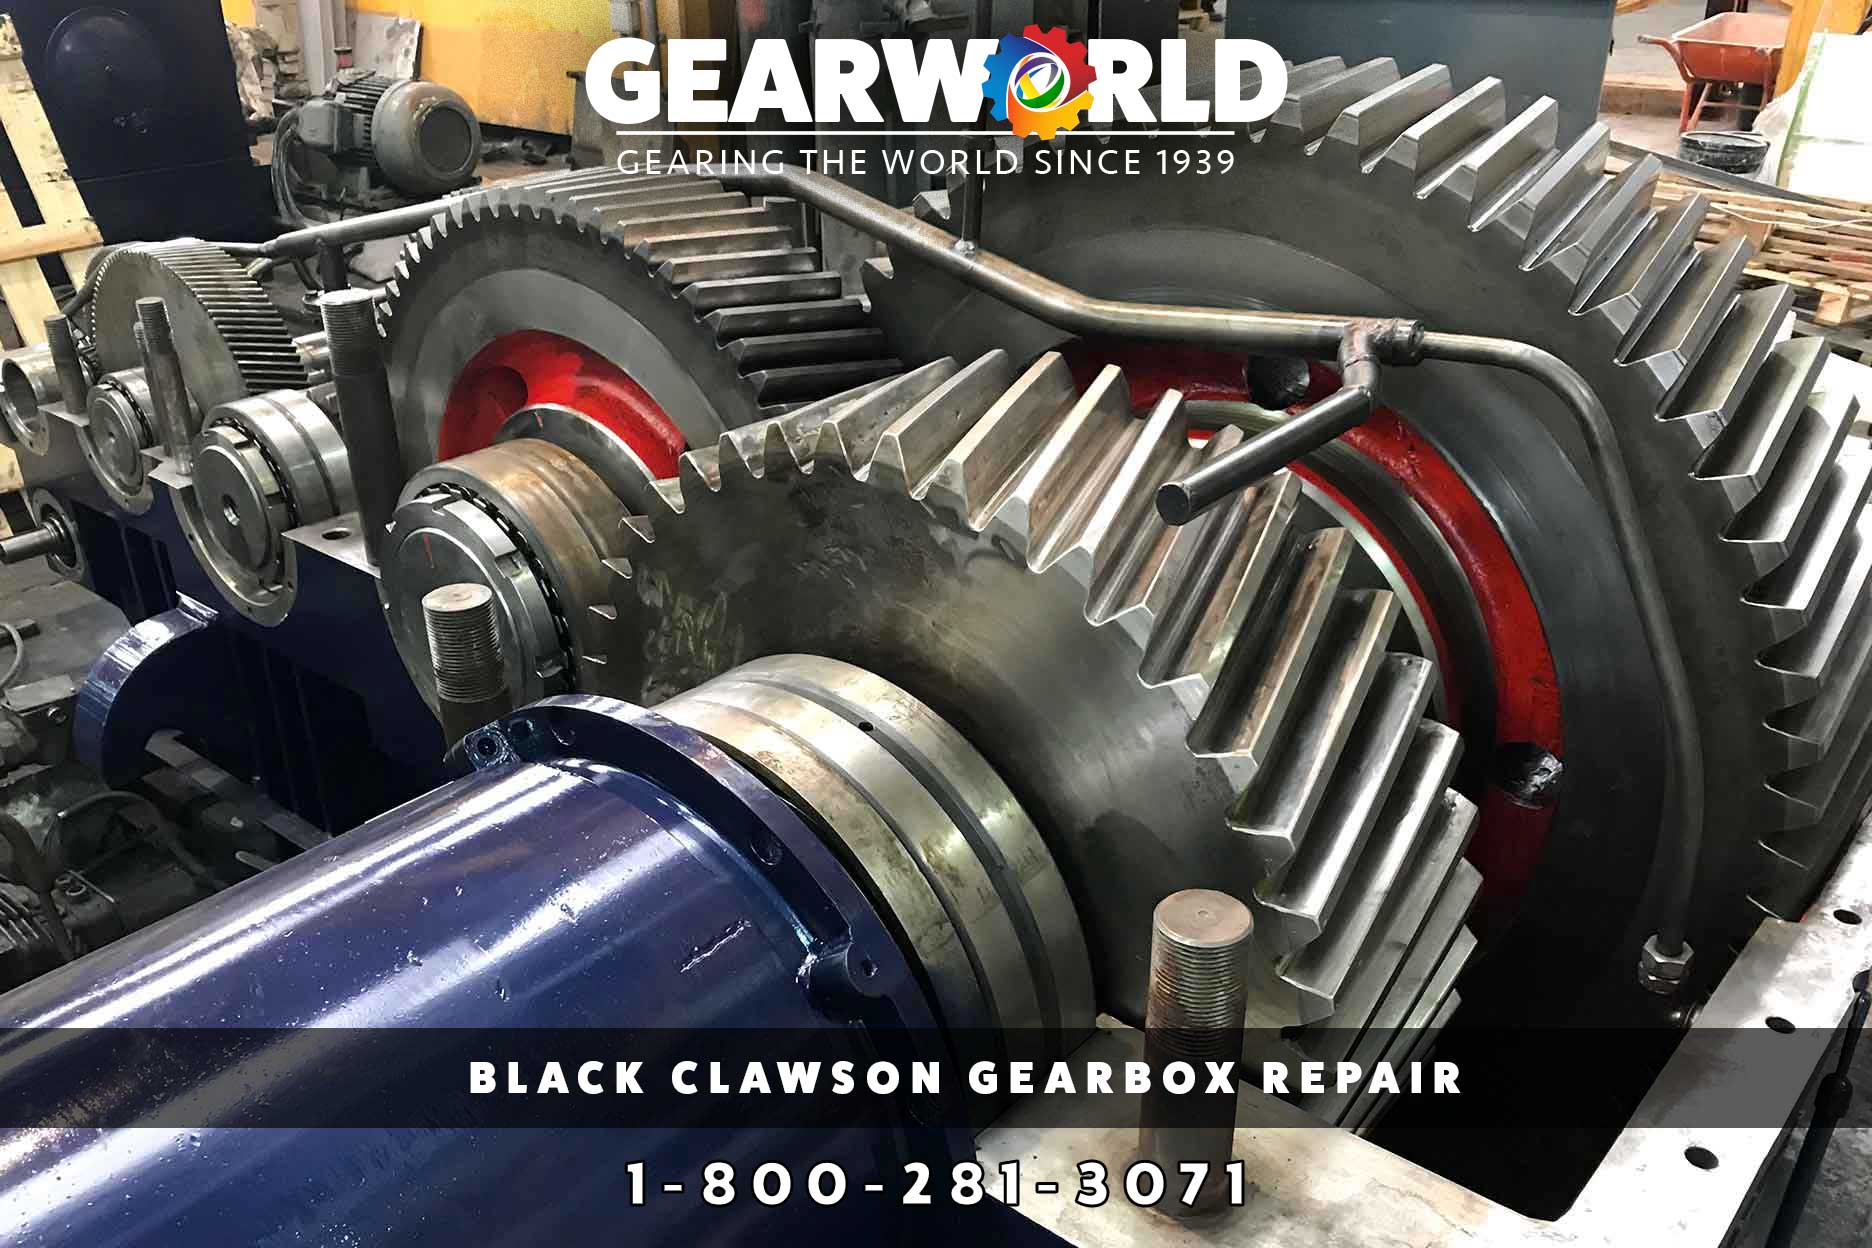 Black Clawson Gearbox Repair - Call GearWorld